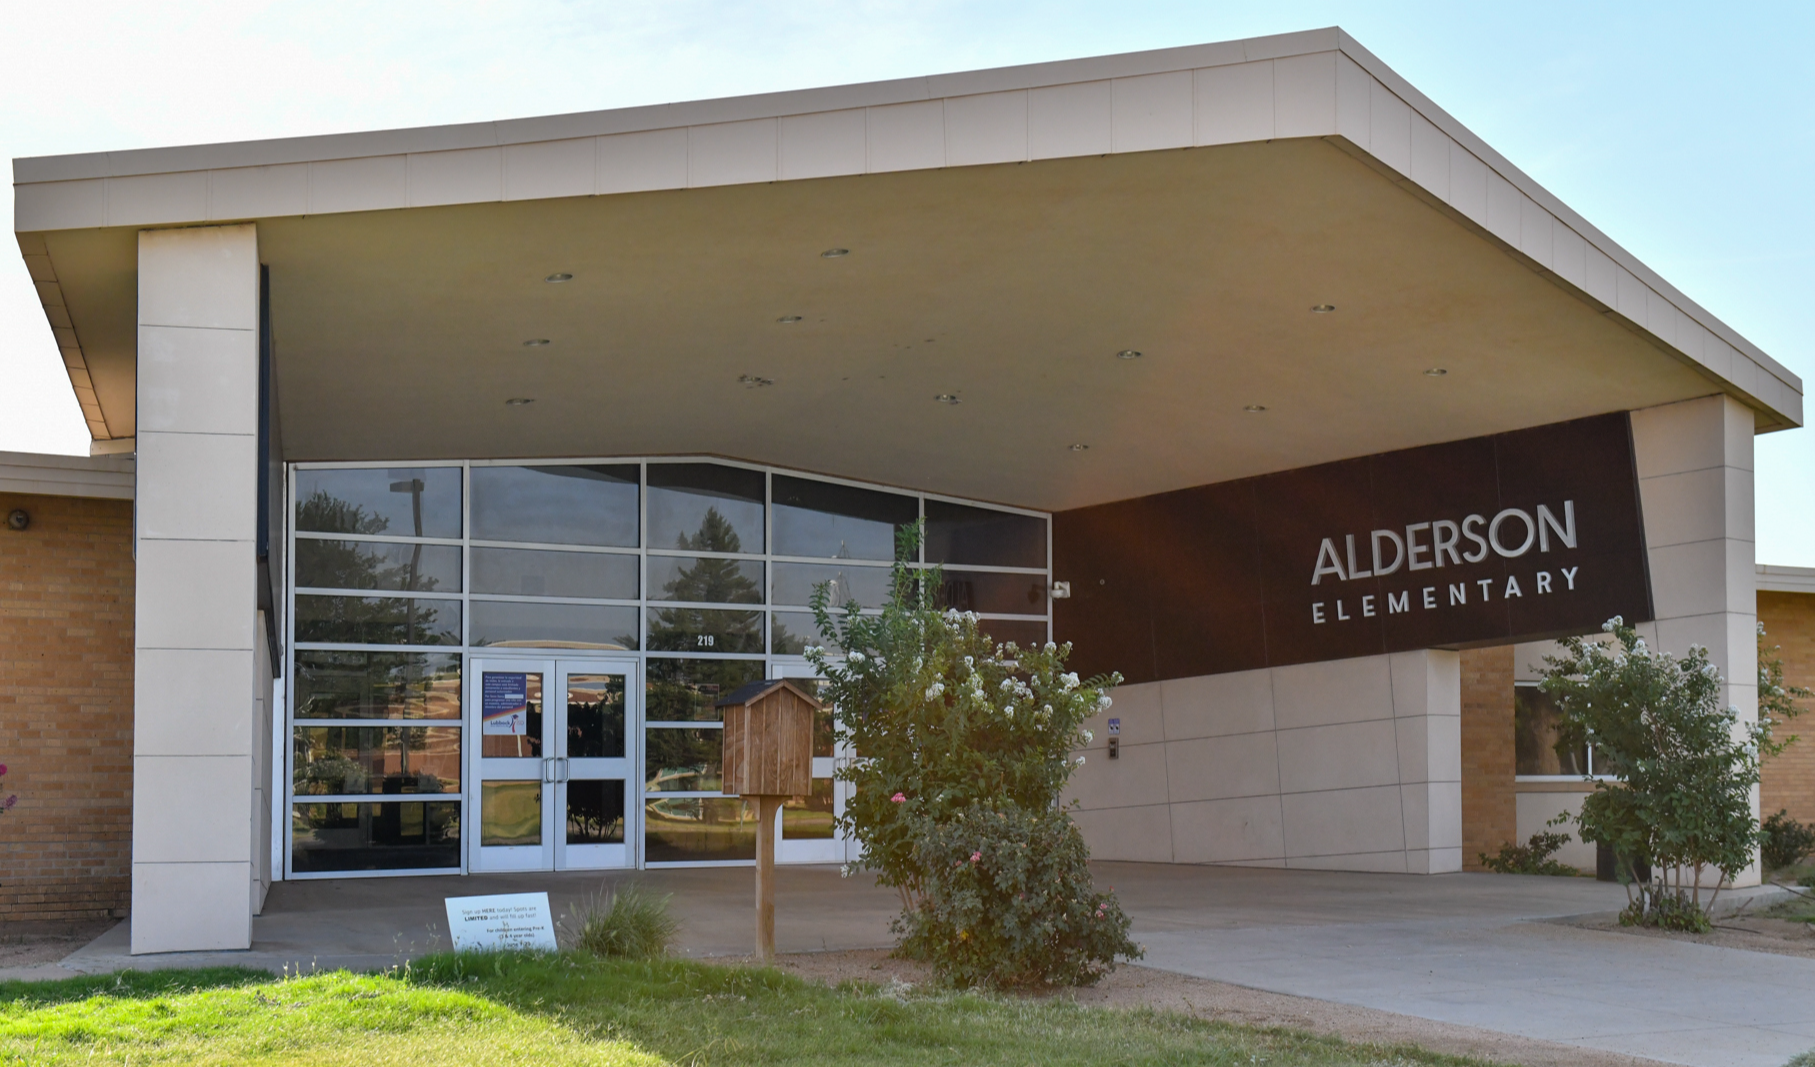 Alderson Elementary School